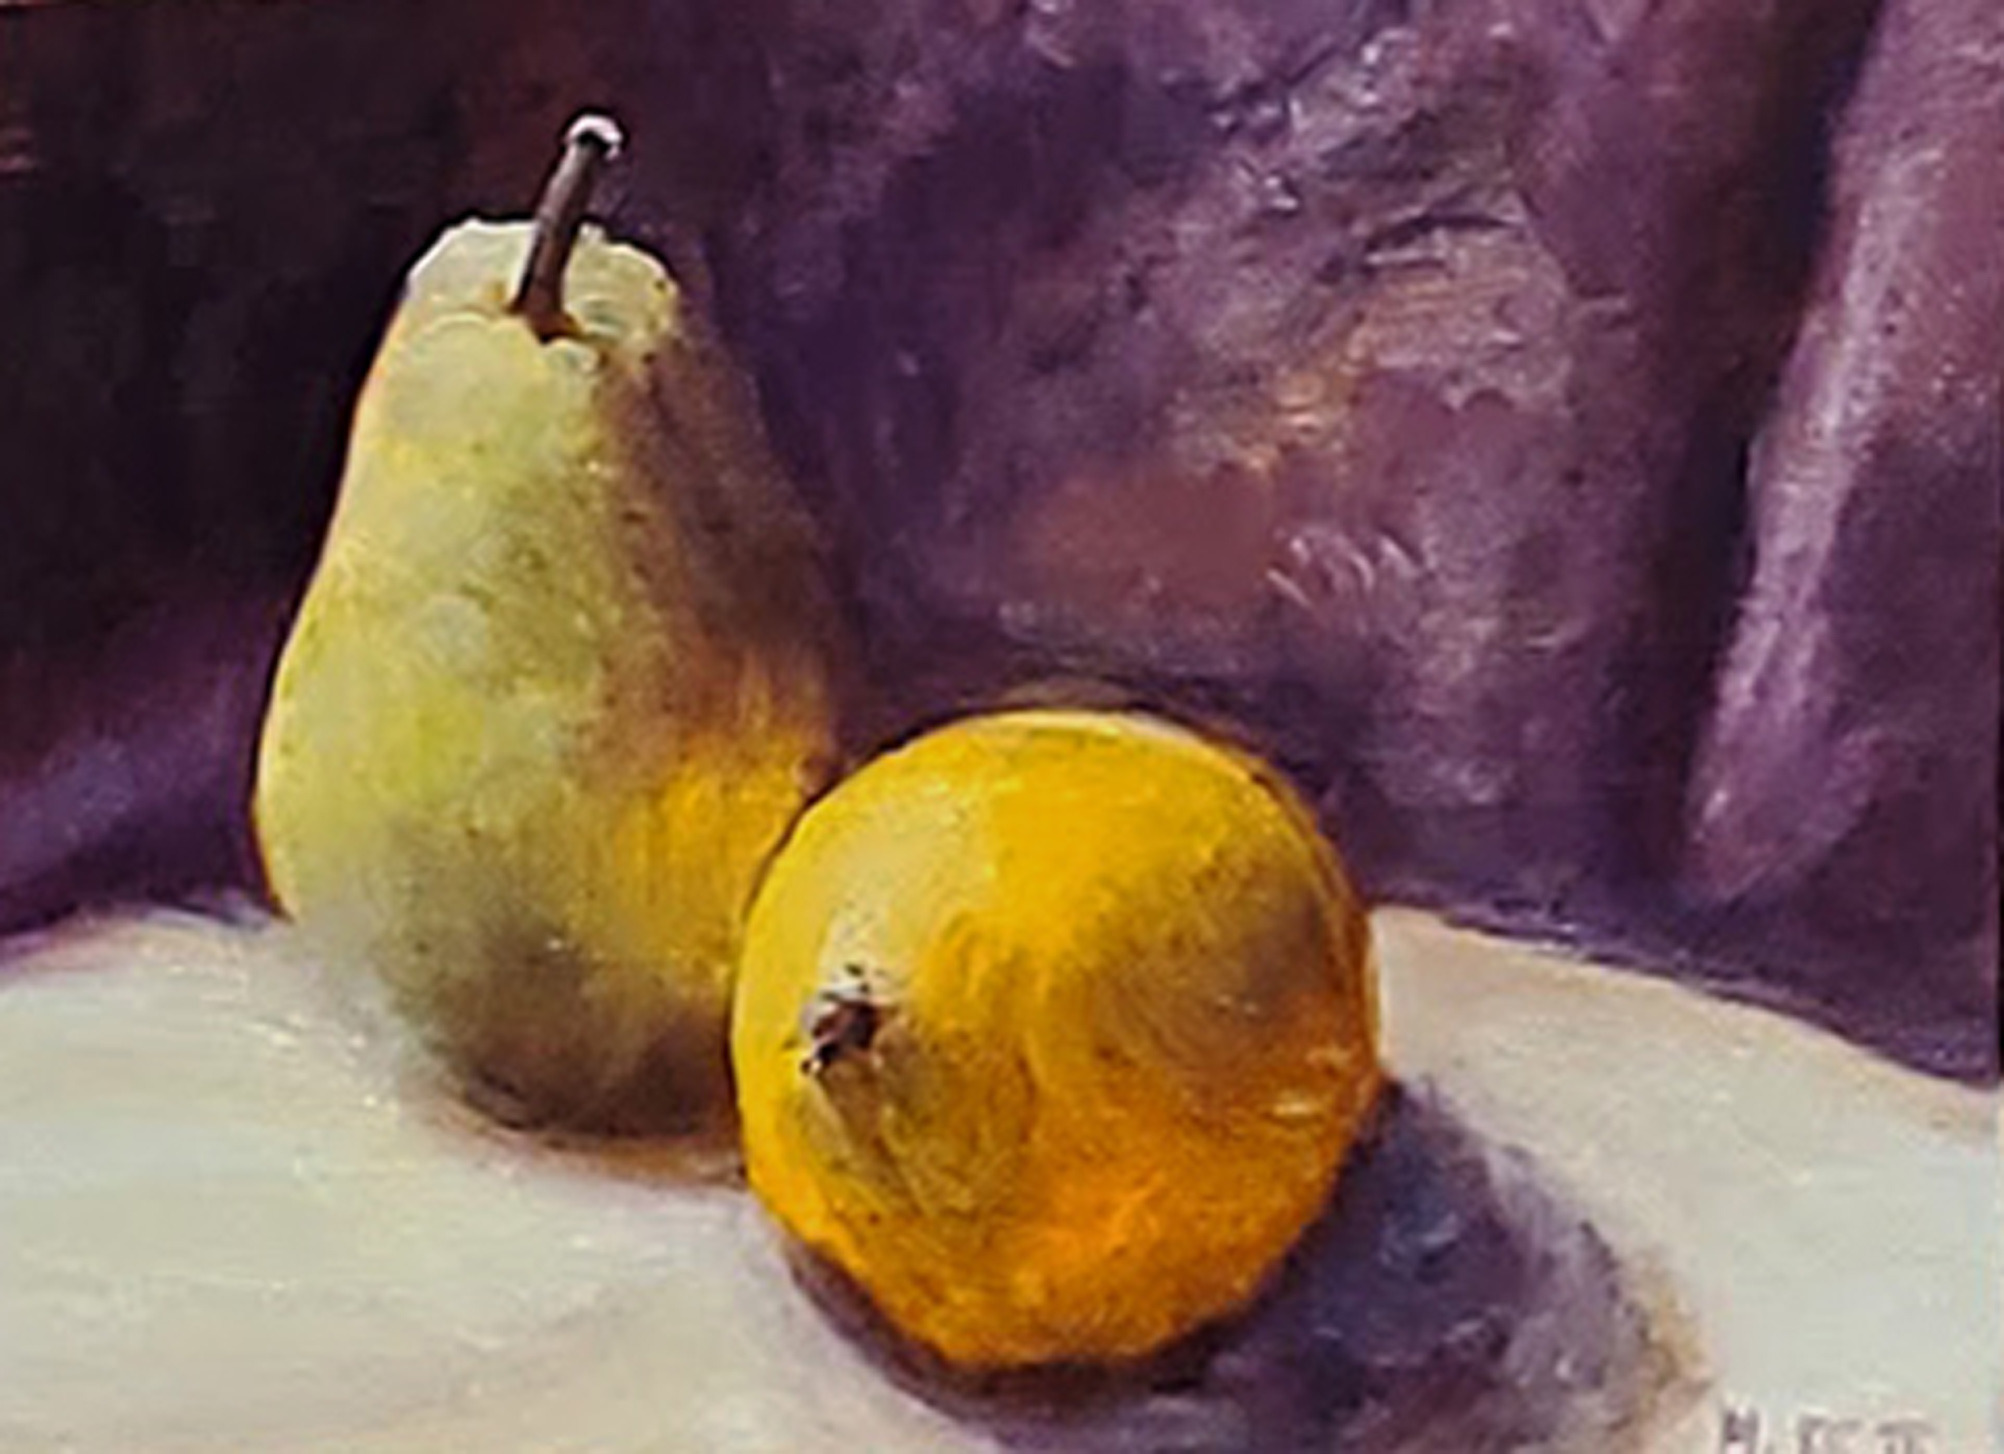 Pear lemon life study by lynda moffatt rg70qy